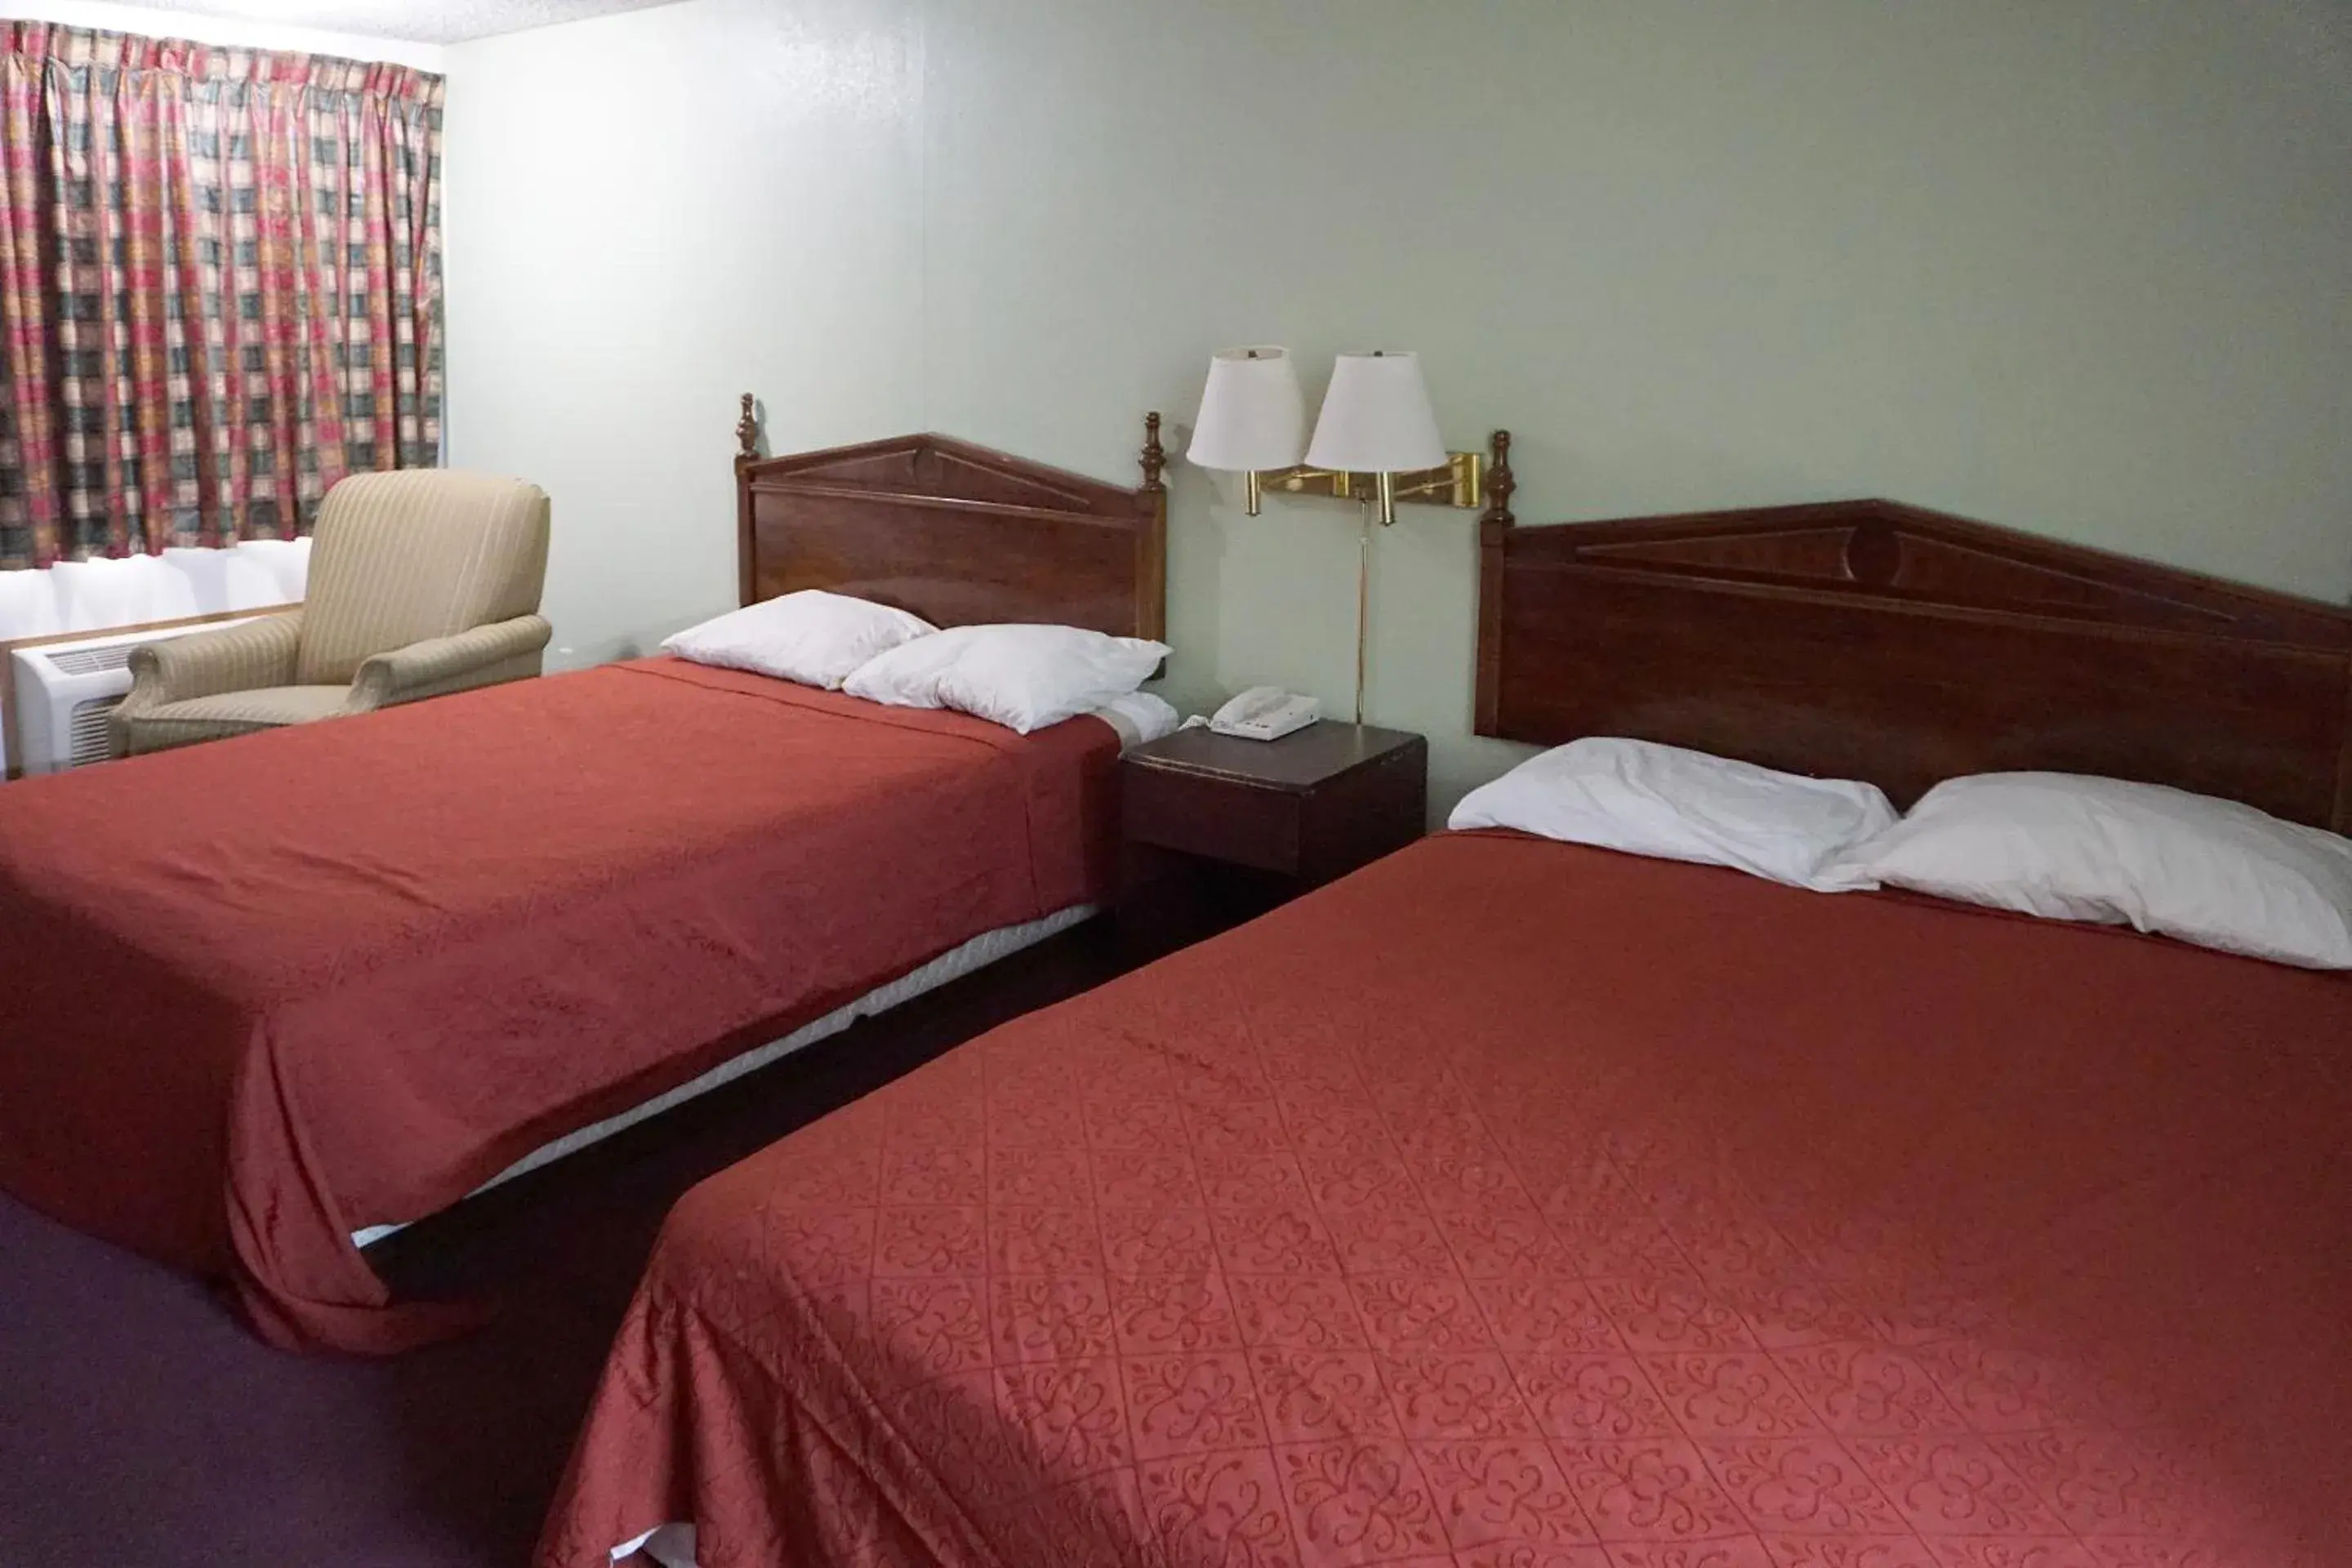 Bedroom, Room Photo in OYO Hotel Altus N Main St